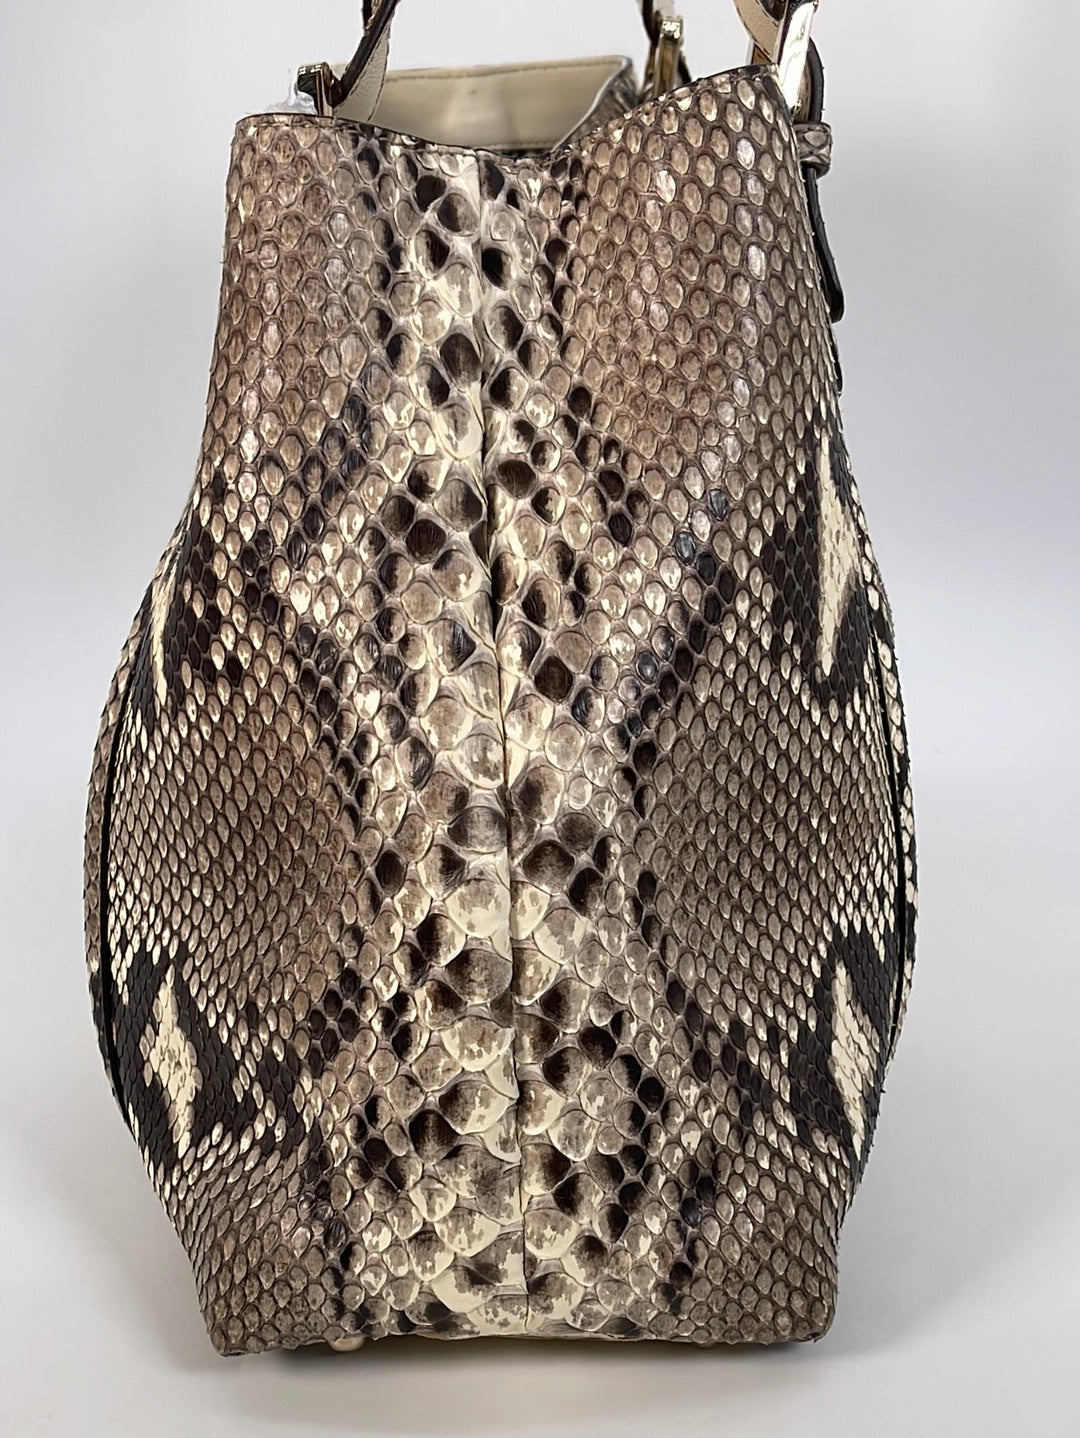 Preloved Gucci Britt Large Tote Python Shoulder Bag 162094213317 030523 - $400 OFF LIVE SALE